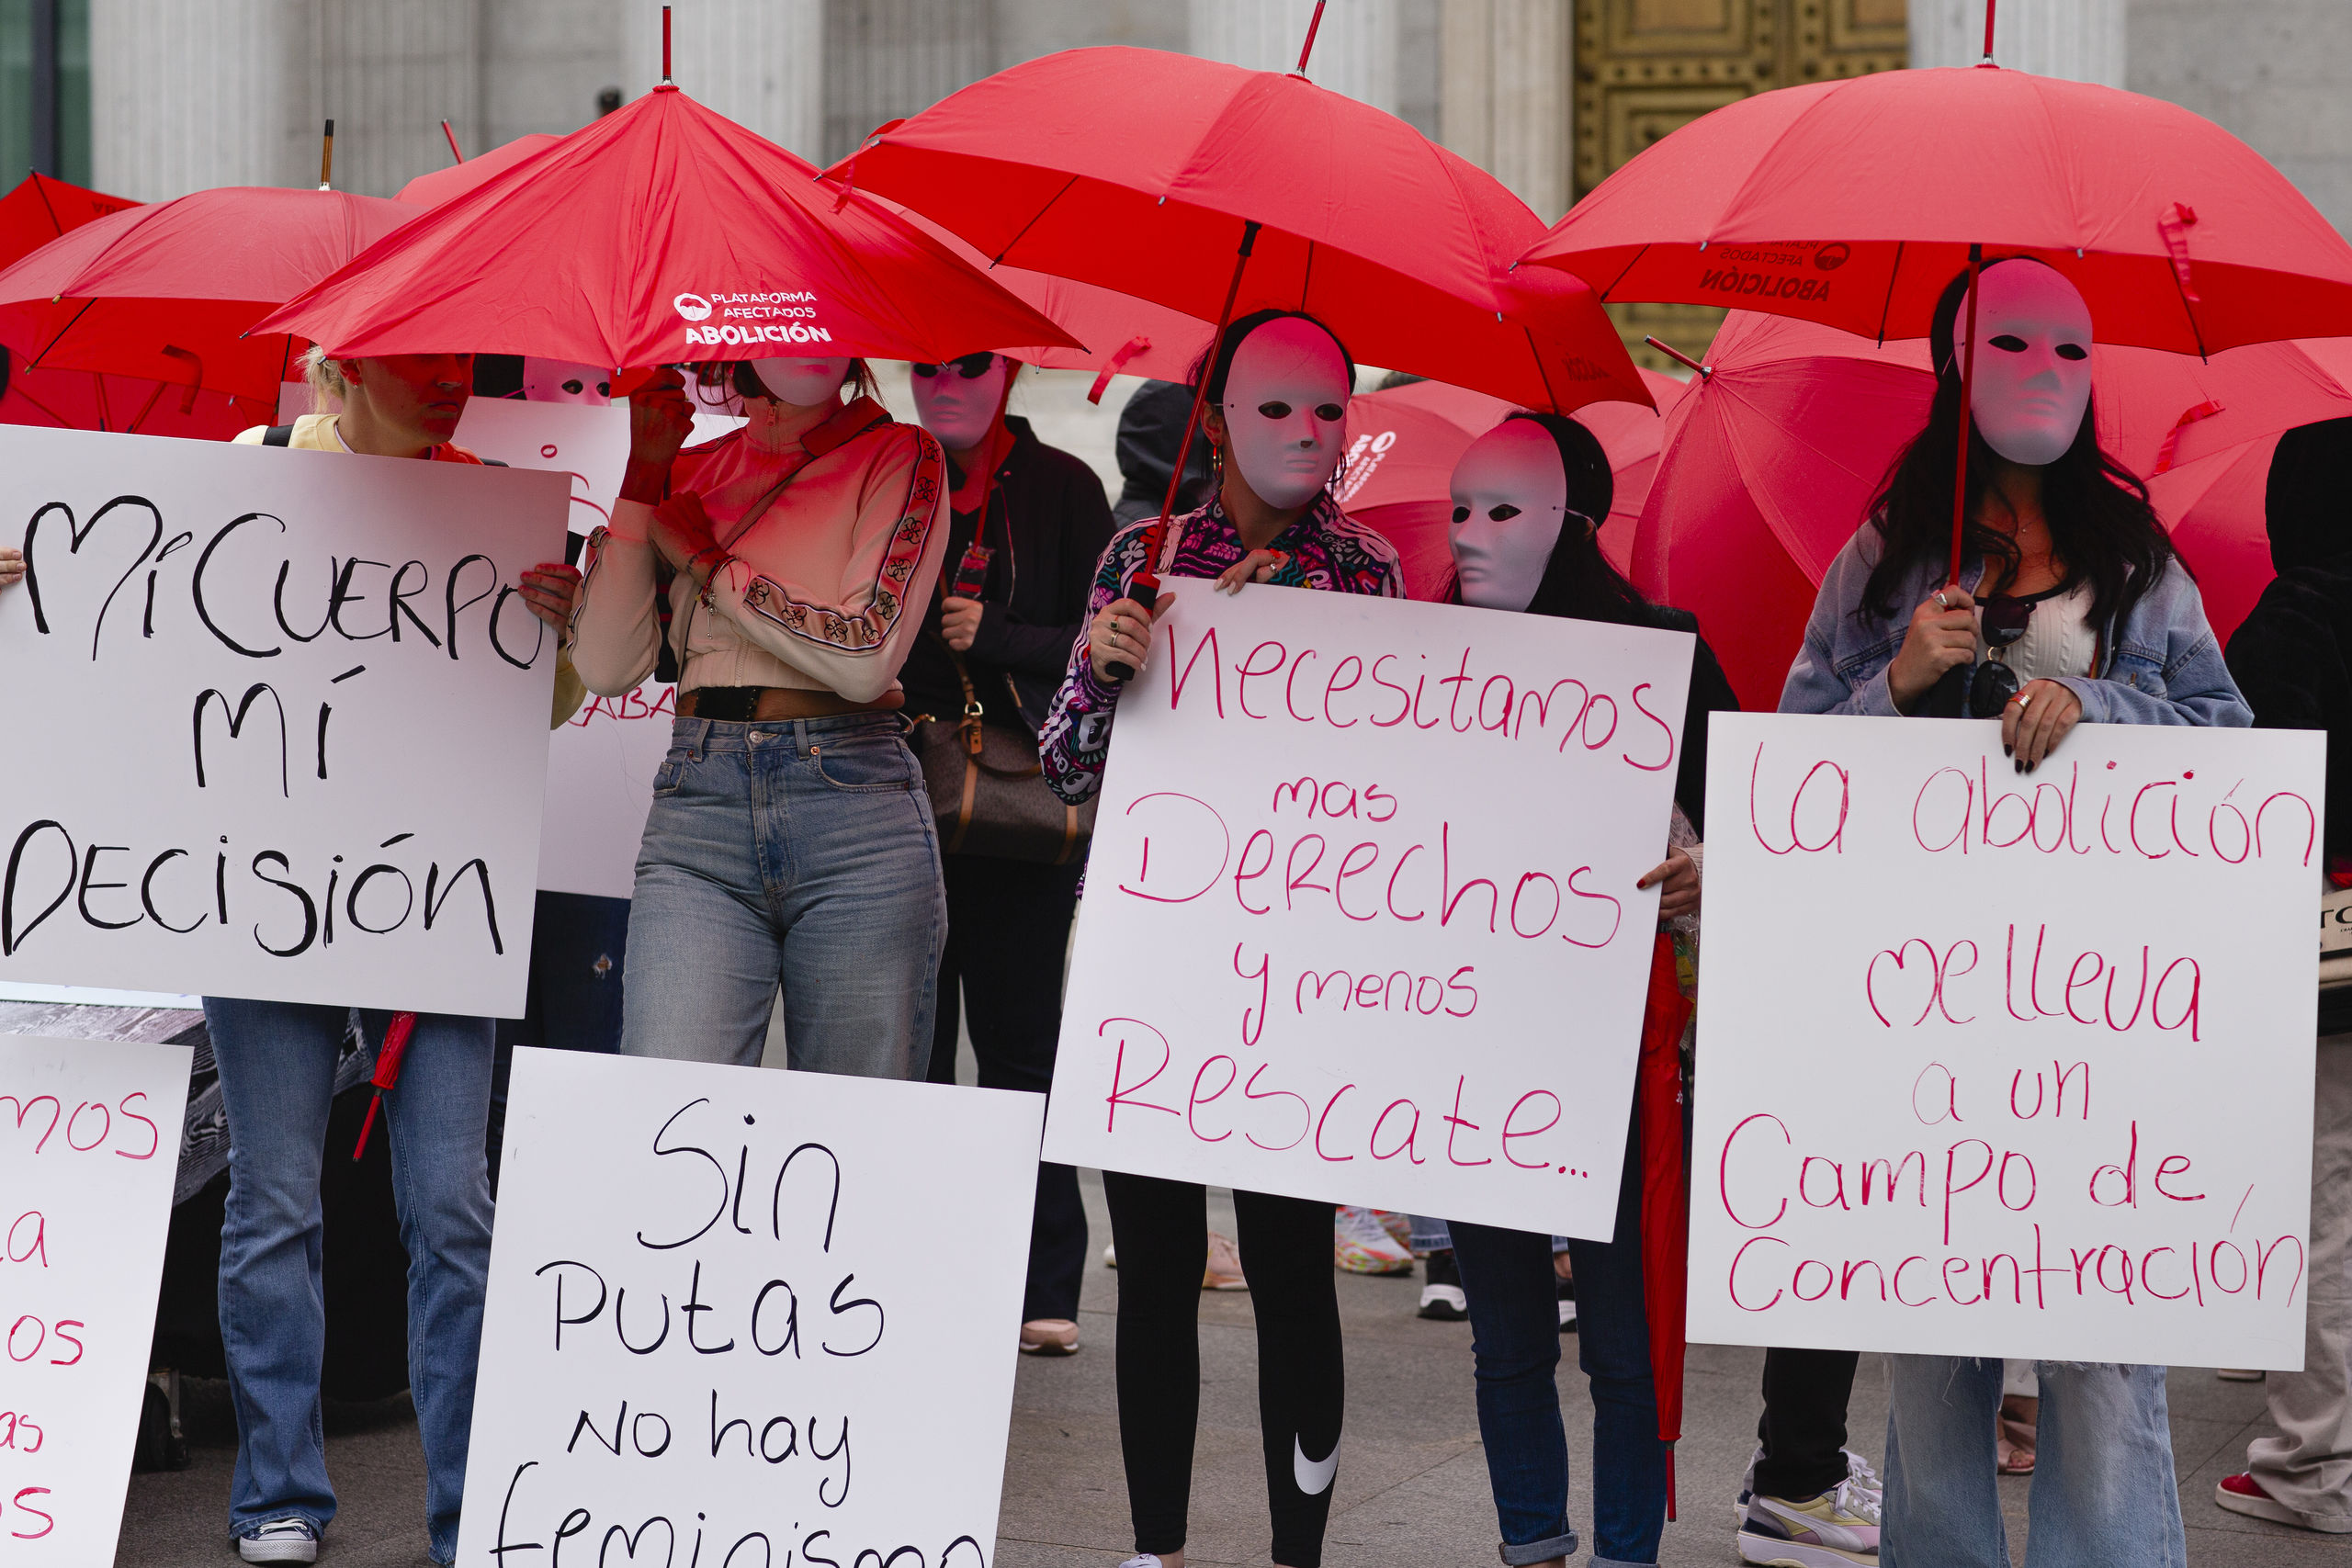 Las prostitutas protestan contra la ley abolicionista del PSOE: "No somos un trozo de carne"